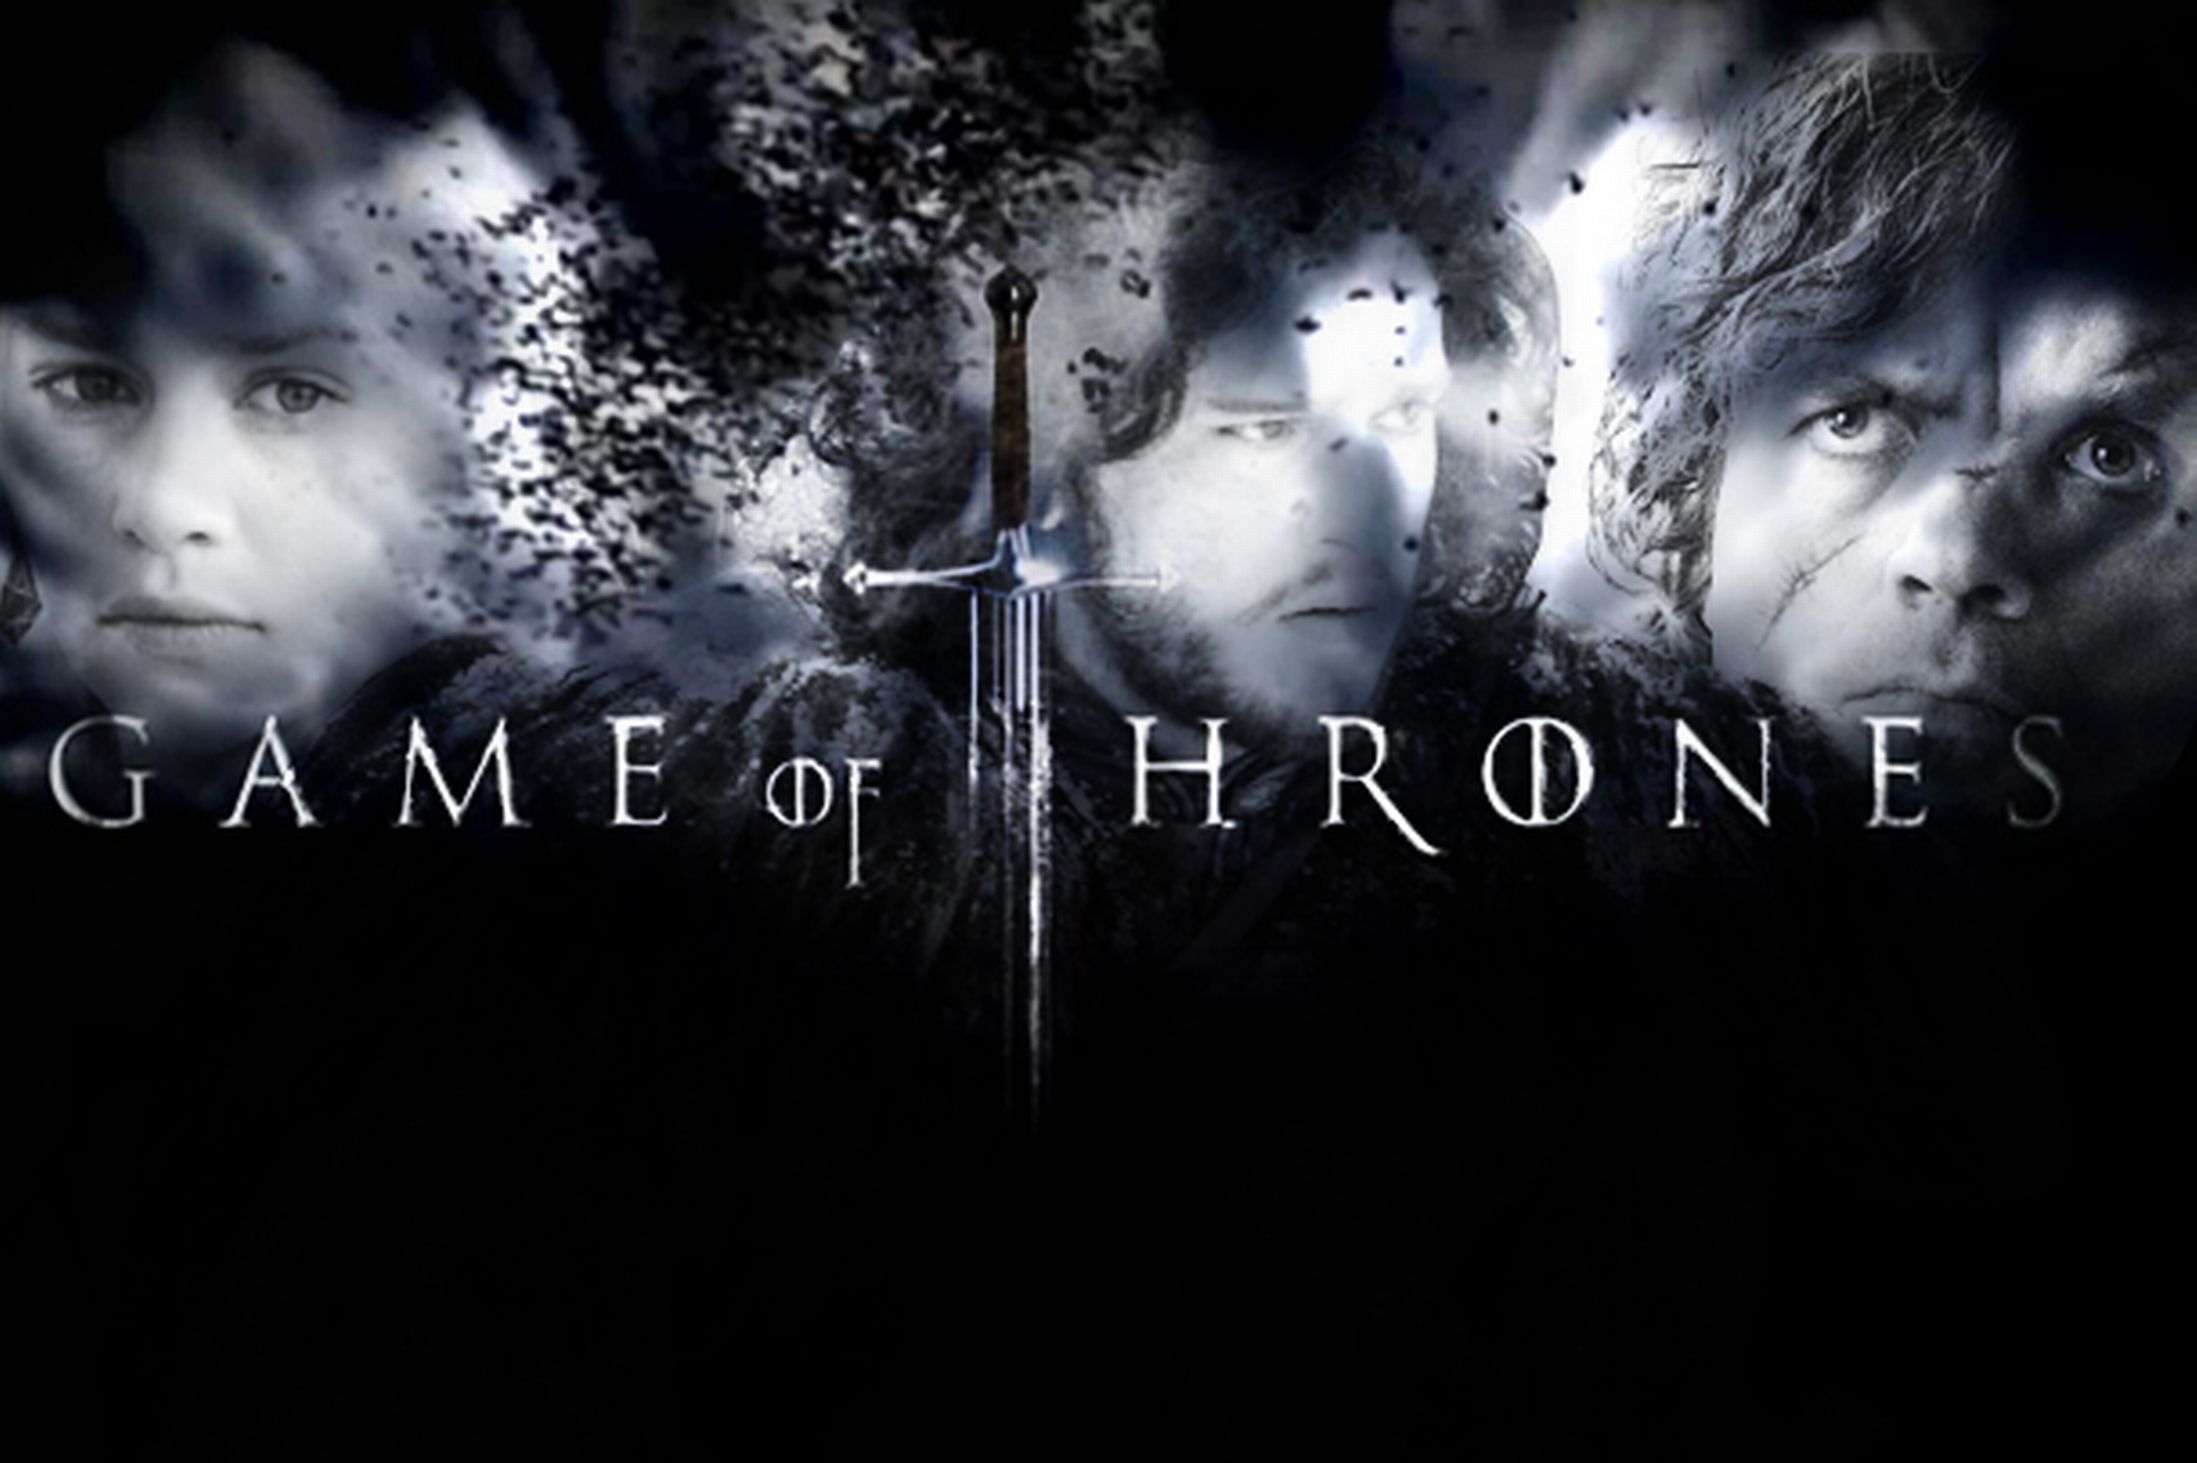 Ρεκόρ τηλεθέασης για το τελευταίο επεισόδιο της σεζόν του Game of Thrones - Πόσοι το παρακολούθησαν;